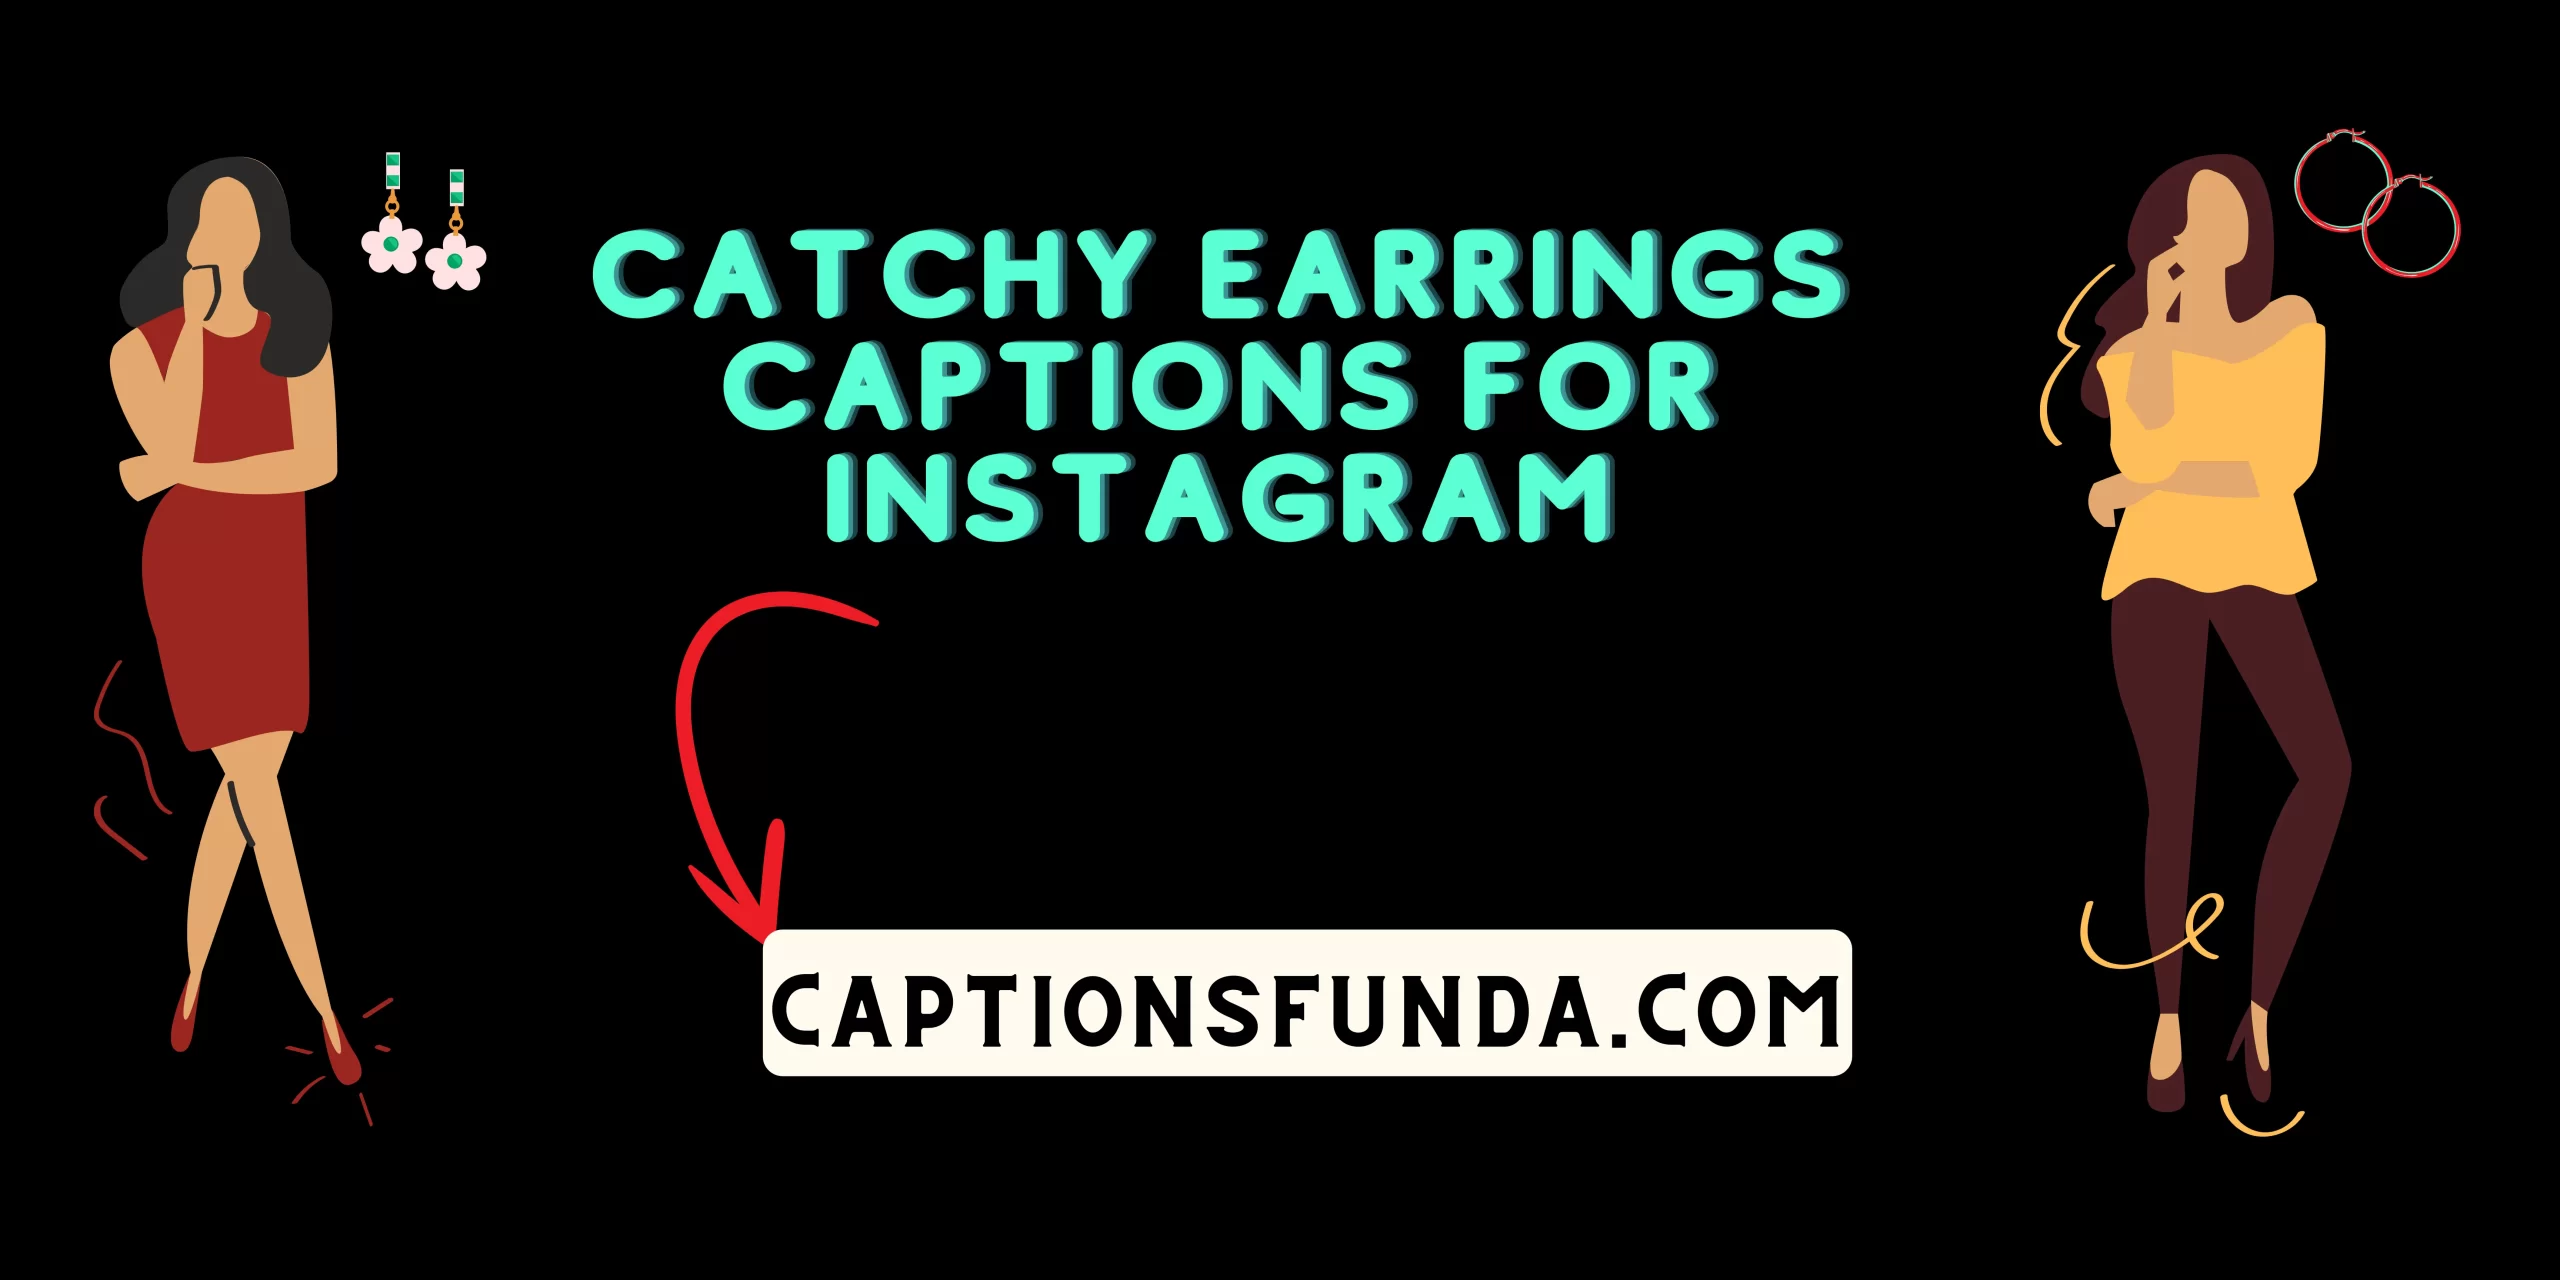 Share more than 83 instagram captions for earrings best - esthdonghoadian